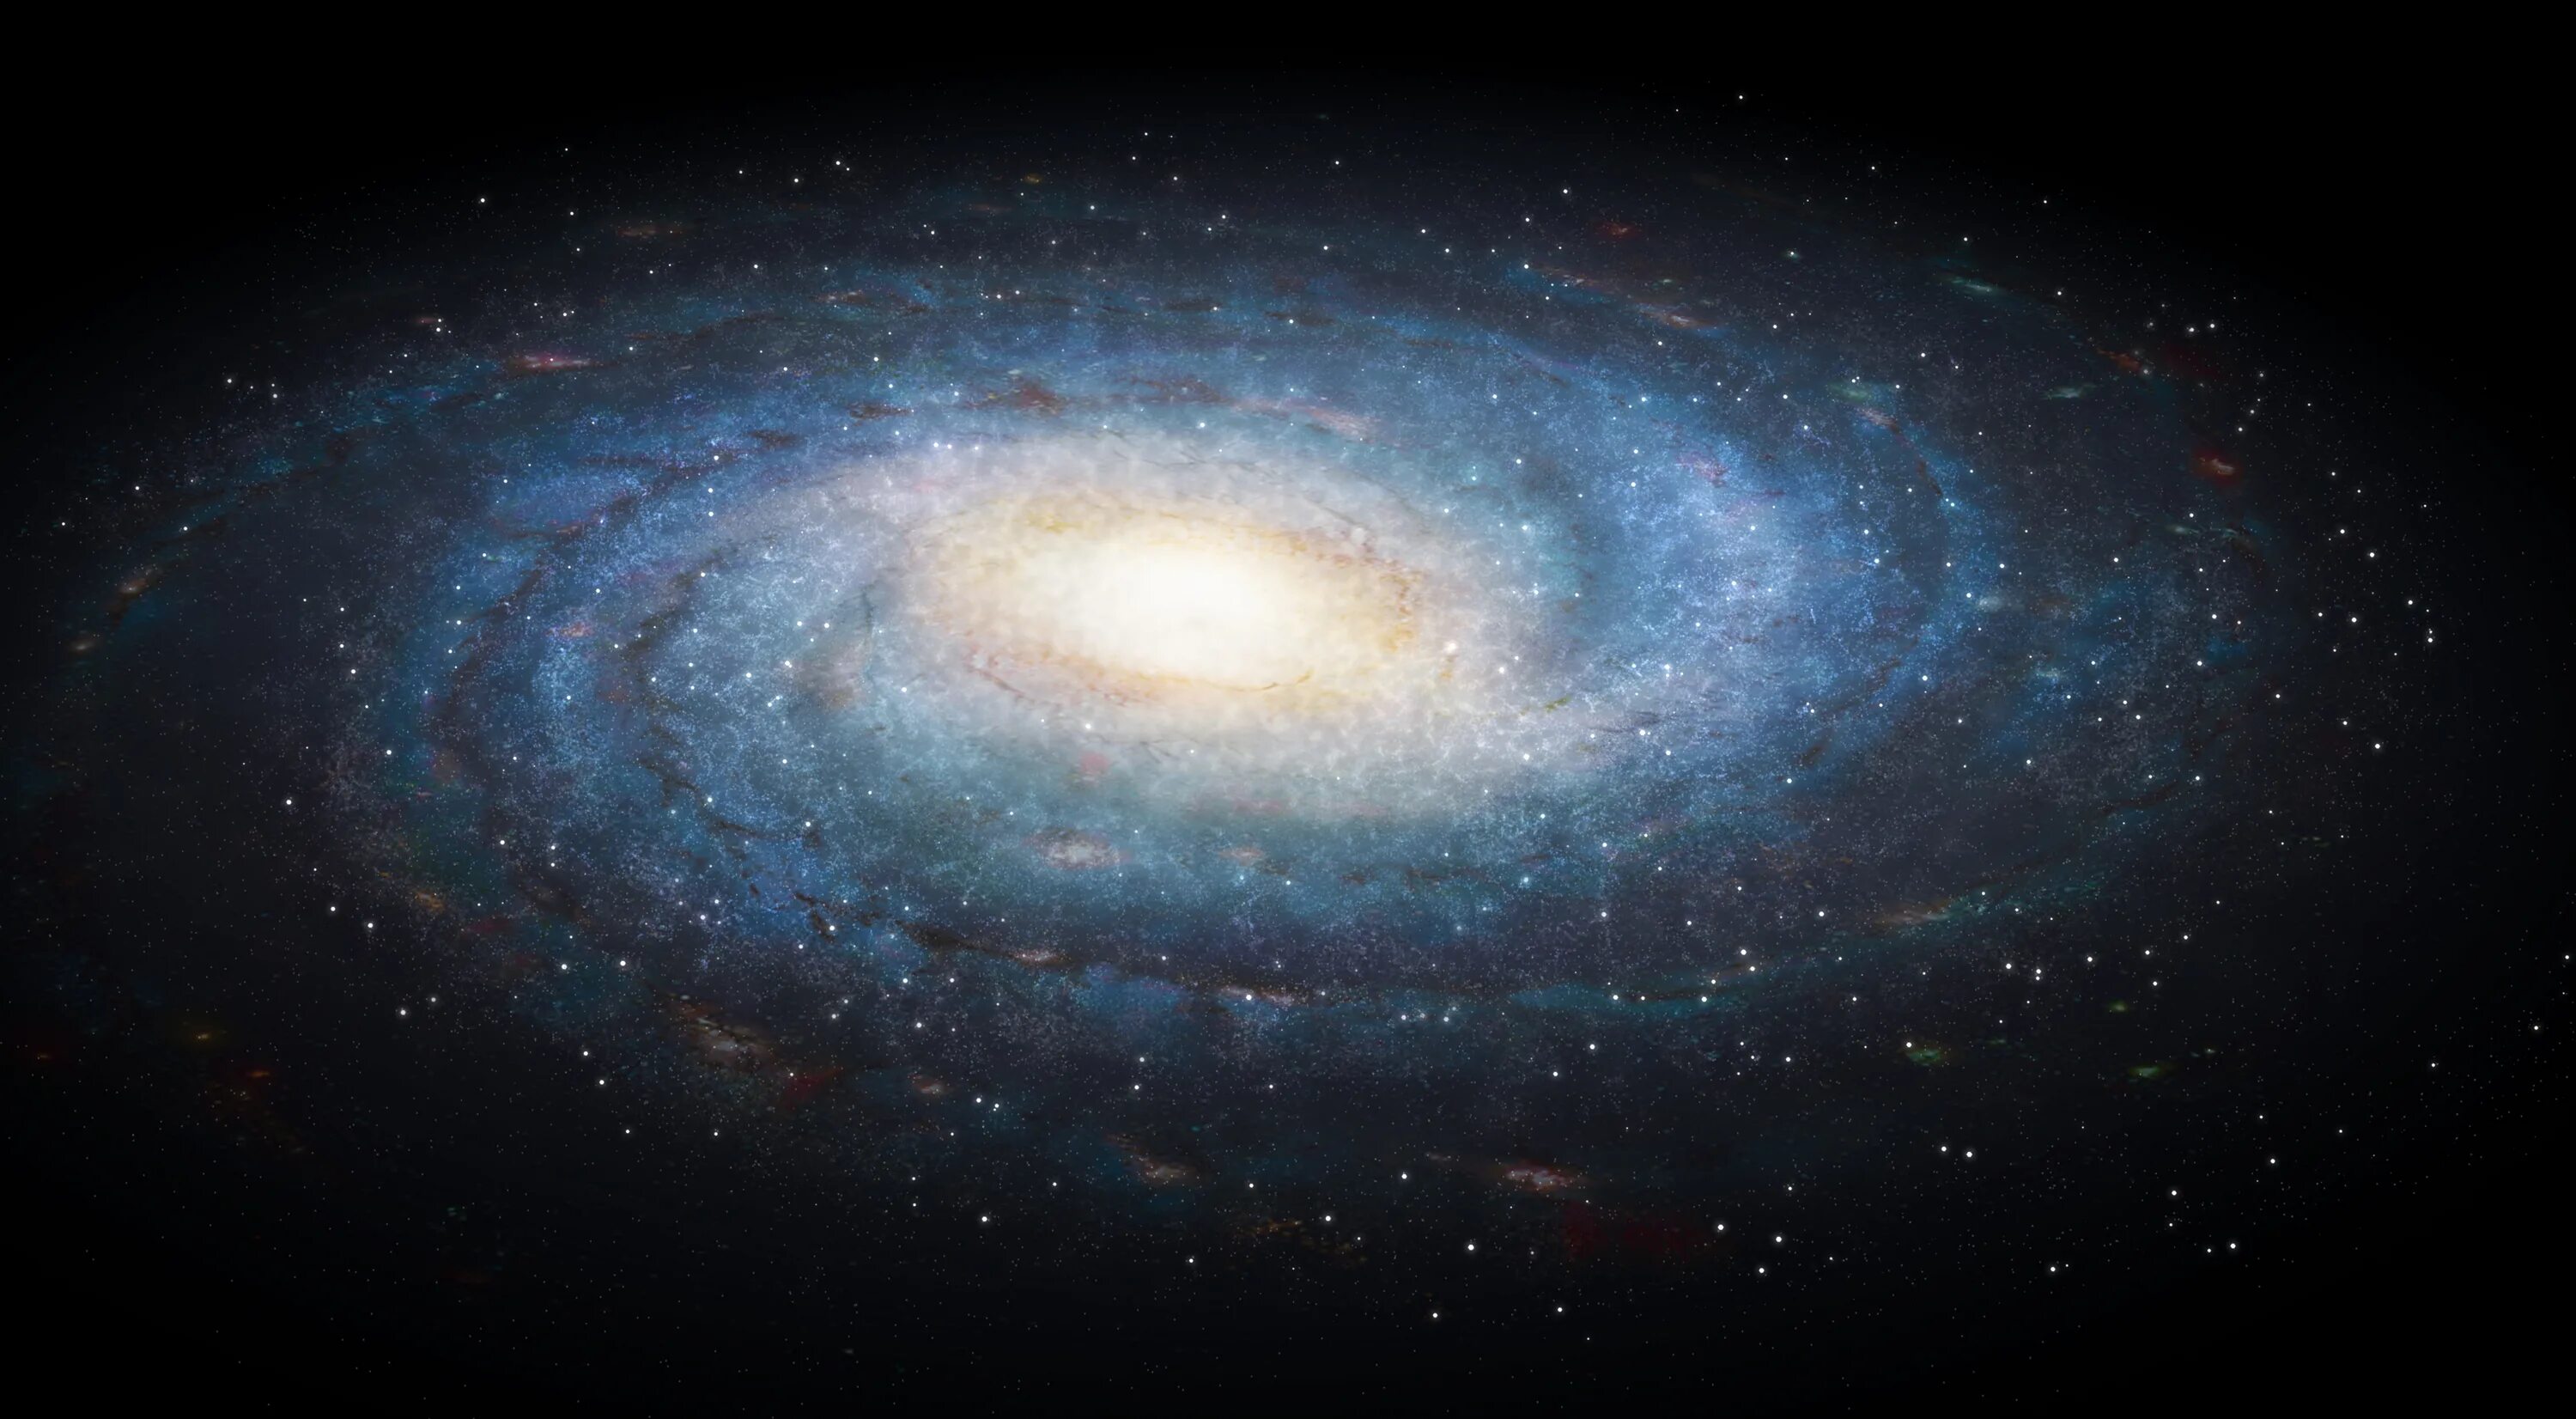 Наша Галактика Млечный путь. Галактика Млечный путь Солнечная система. Милки Вэй Галактика. Спиралевидная Галактика Млечный путь. Гигантская звездная система